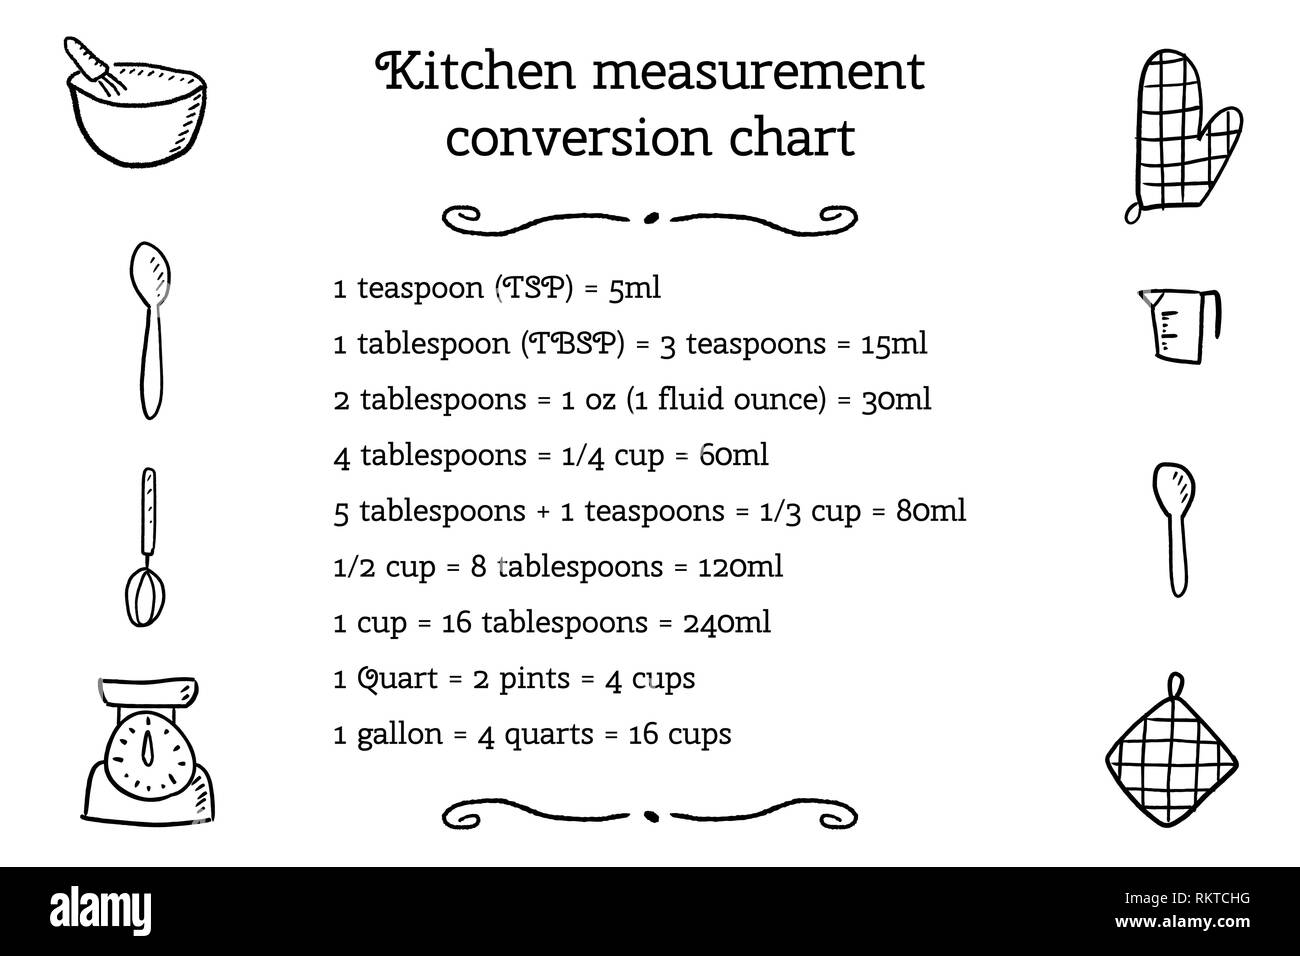 kitchen-unit-conversion-chart-baking-measurement-units-cooking-design-stock-vector-image